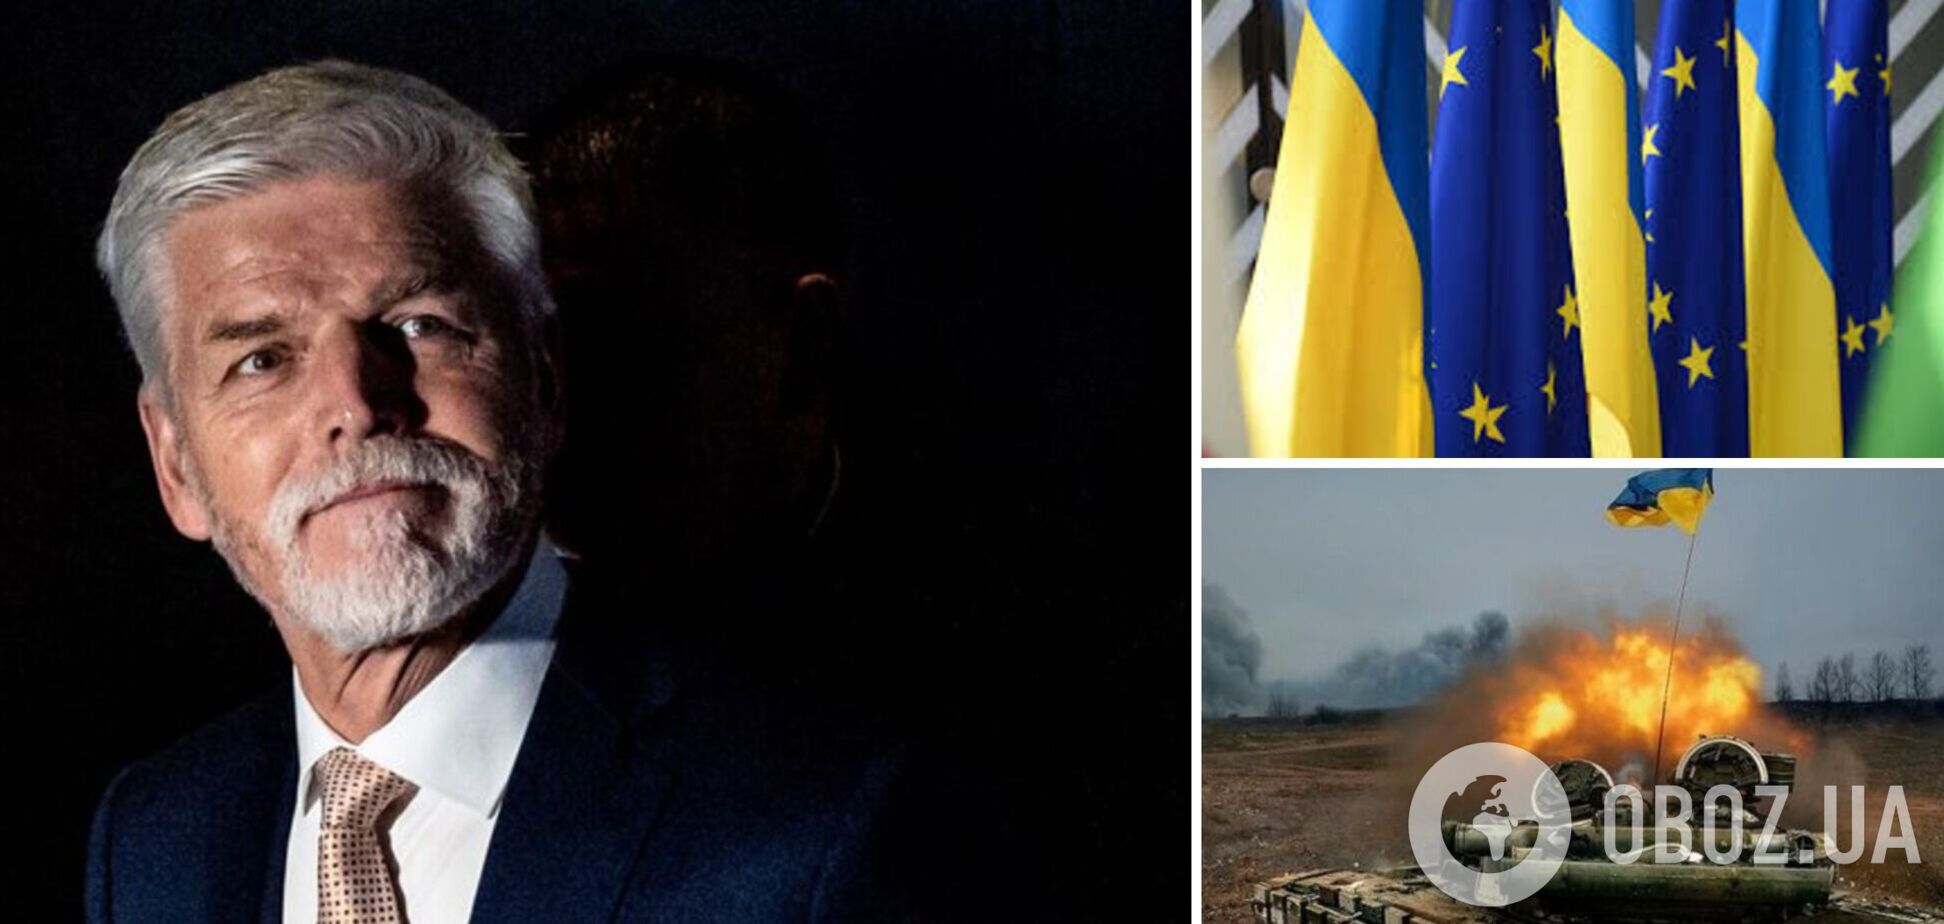 'Якщо впаде Україна, то впадемо ми всі': президент Чехії закликав підтримувати Київ до перемоги